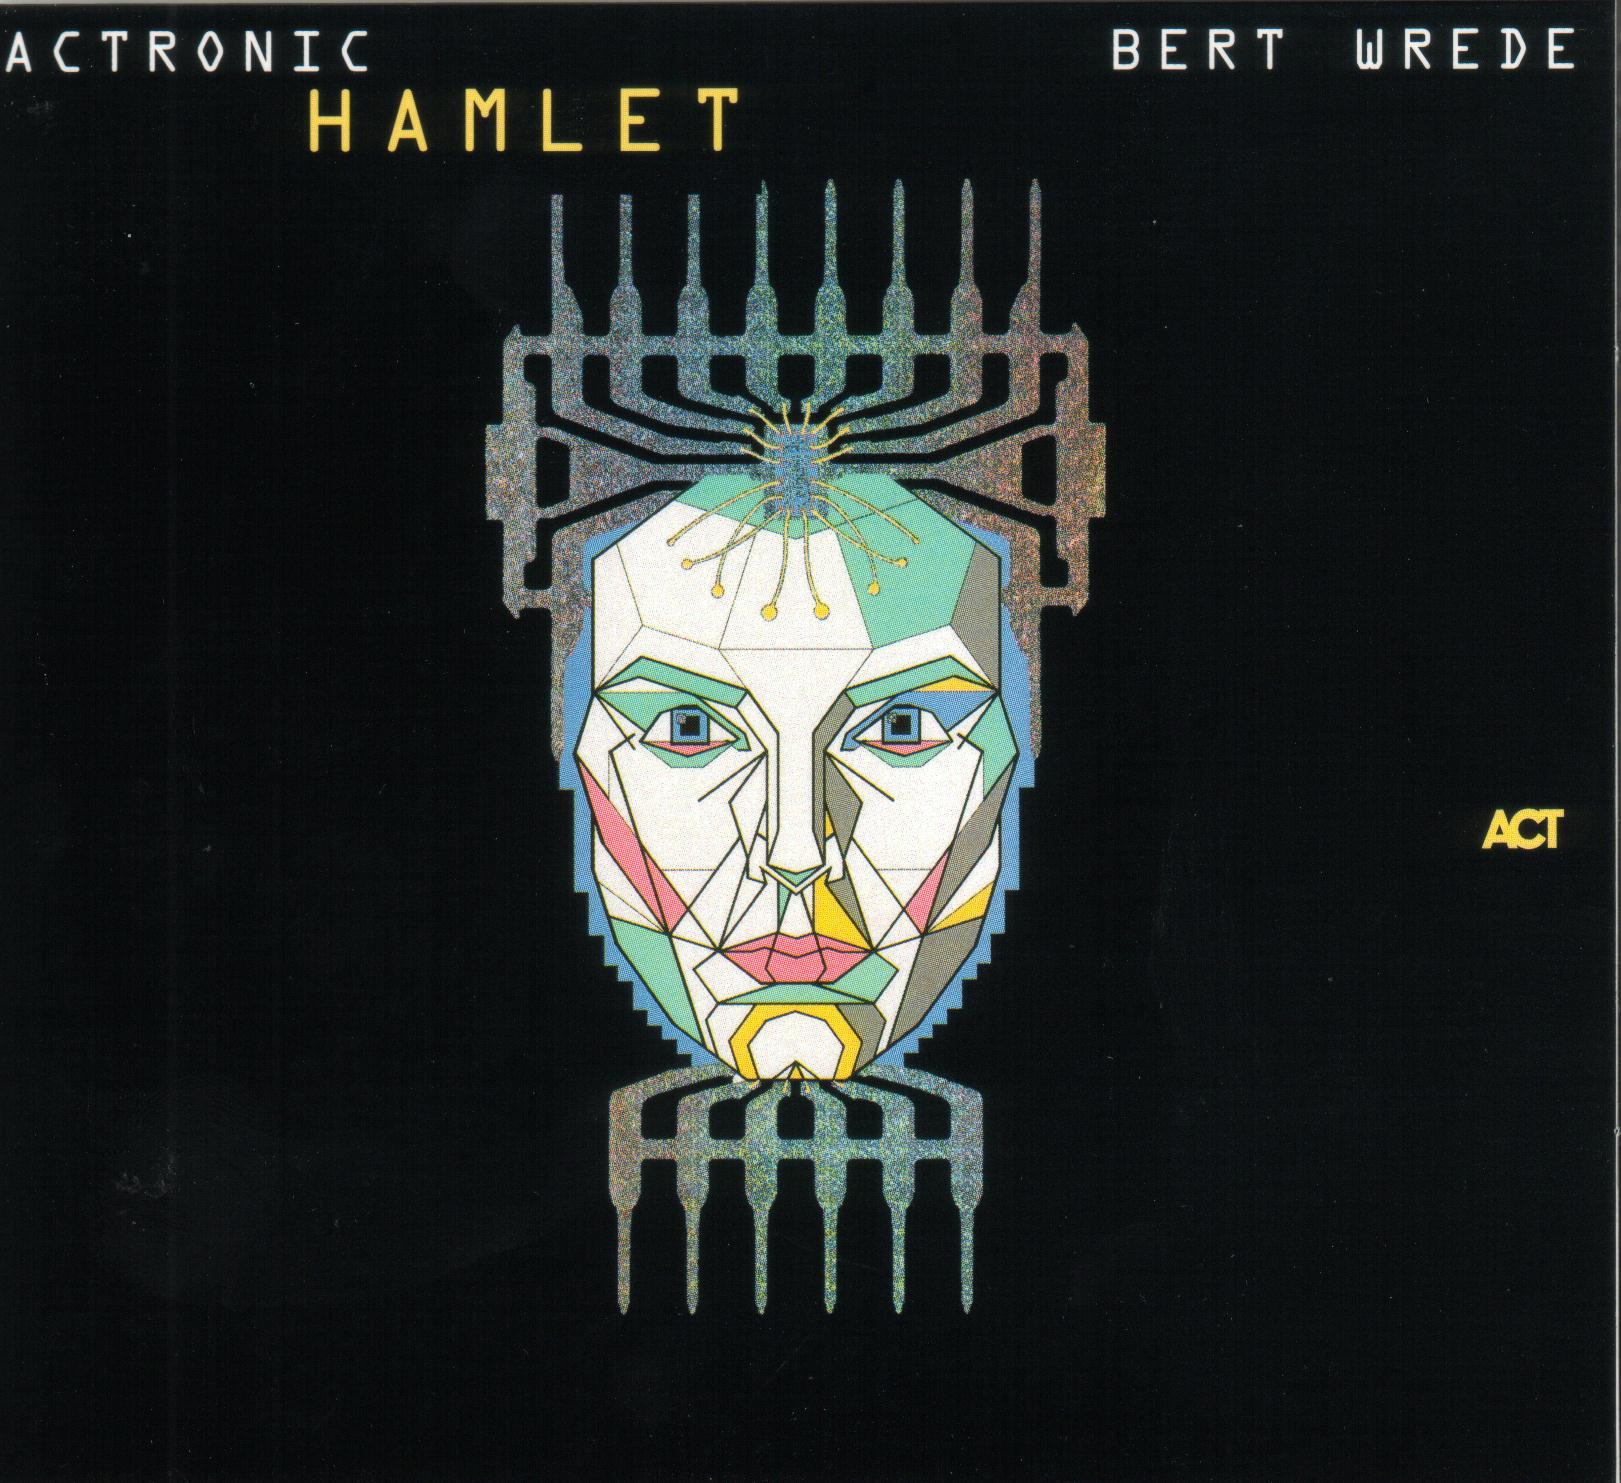 Actronic - Hamlet